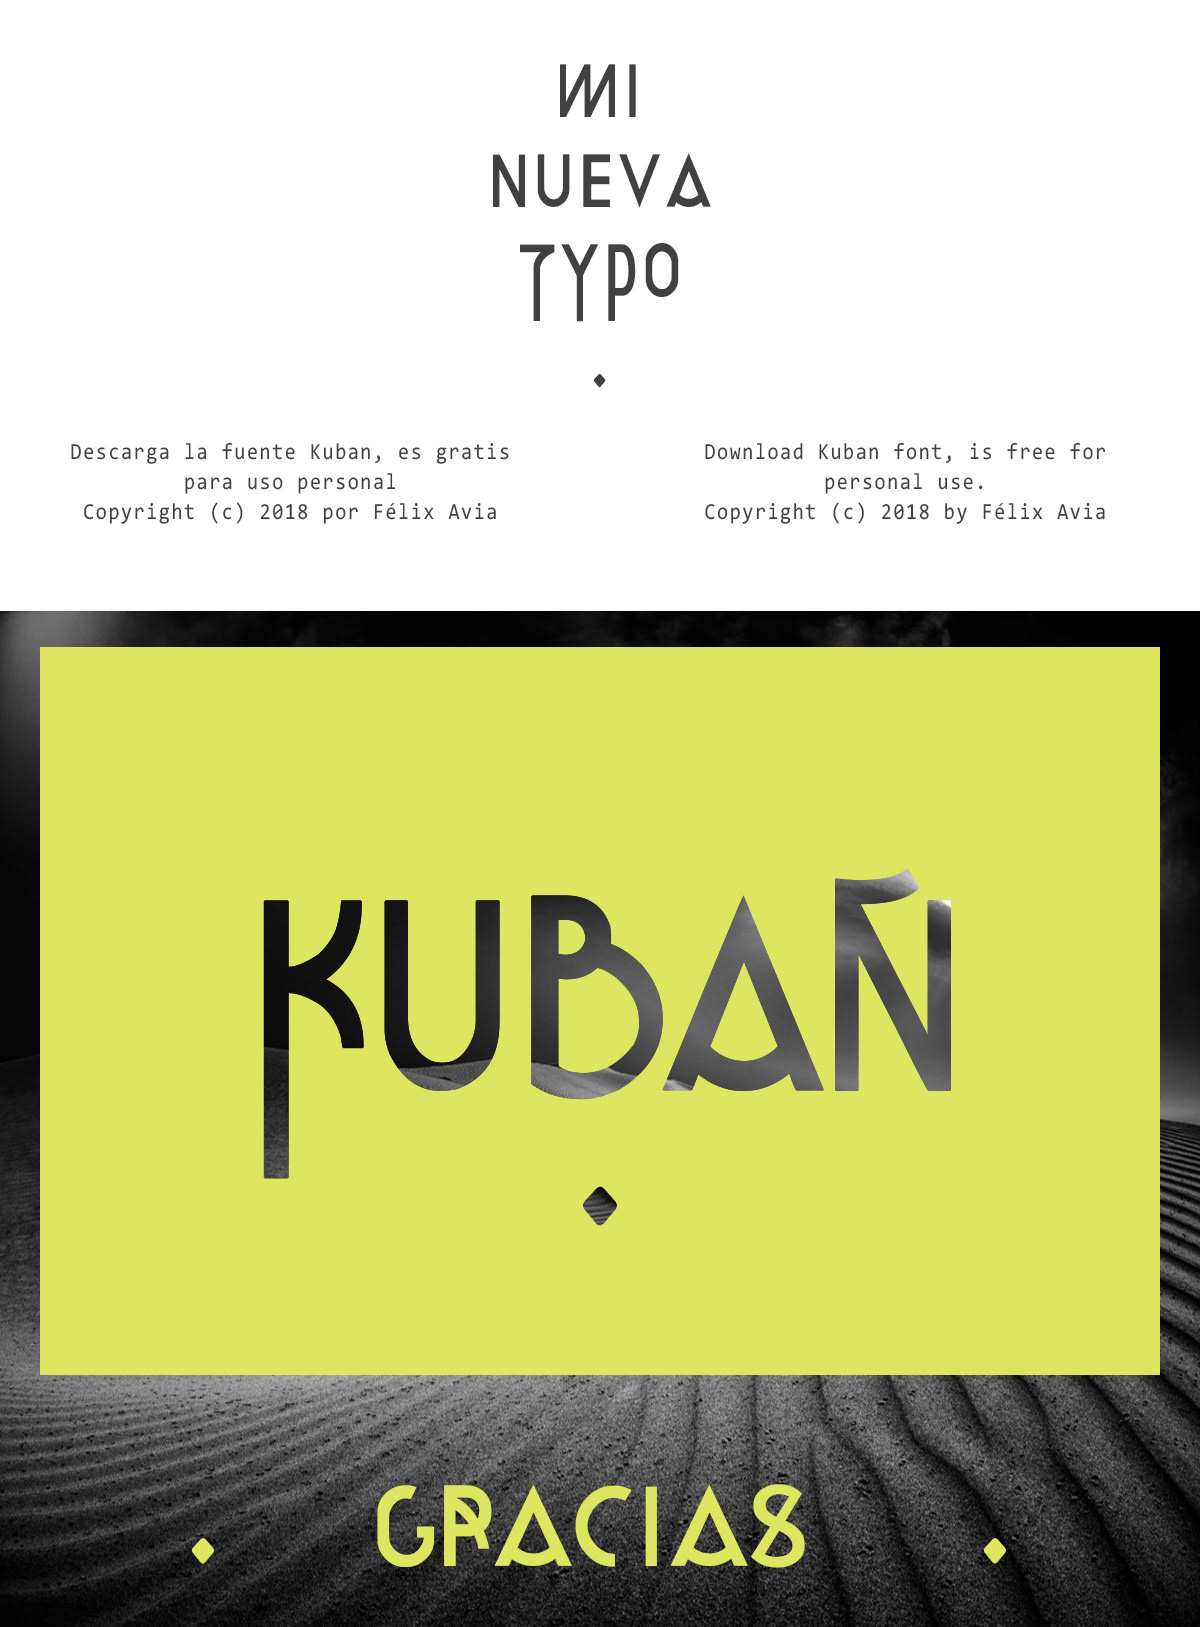 font type tipografia Kuban free bold gratis fuente